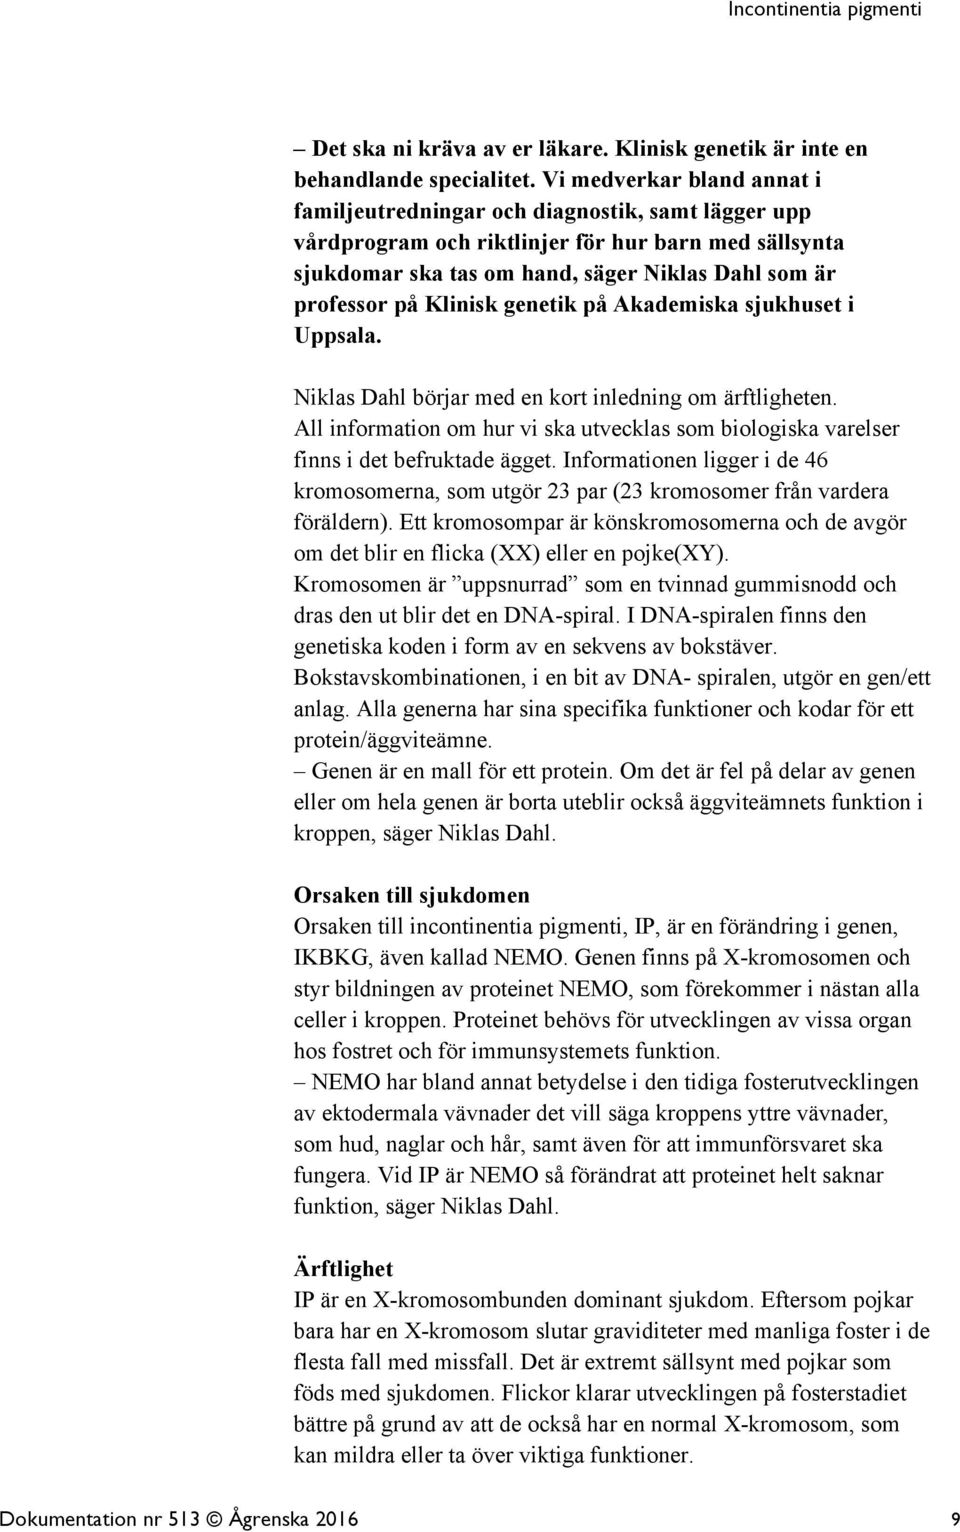 Klinisk genetik på Akademiska sjukhuset i Uppsala. Niklas Dahl börjar med en kort inledning om ärftligheten.